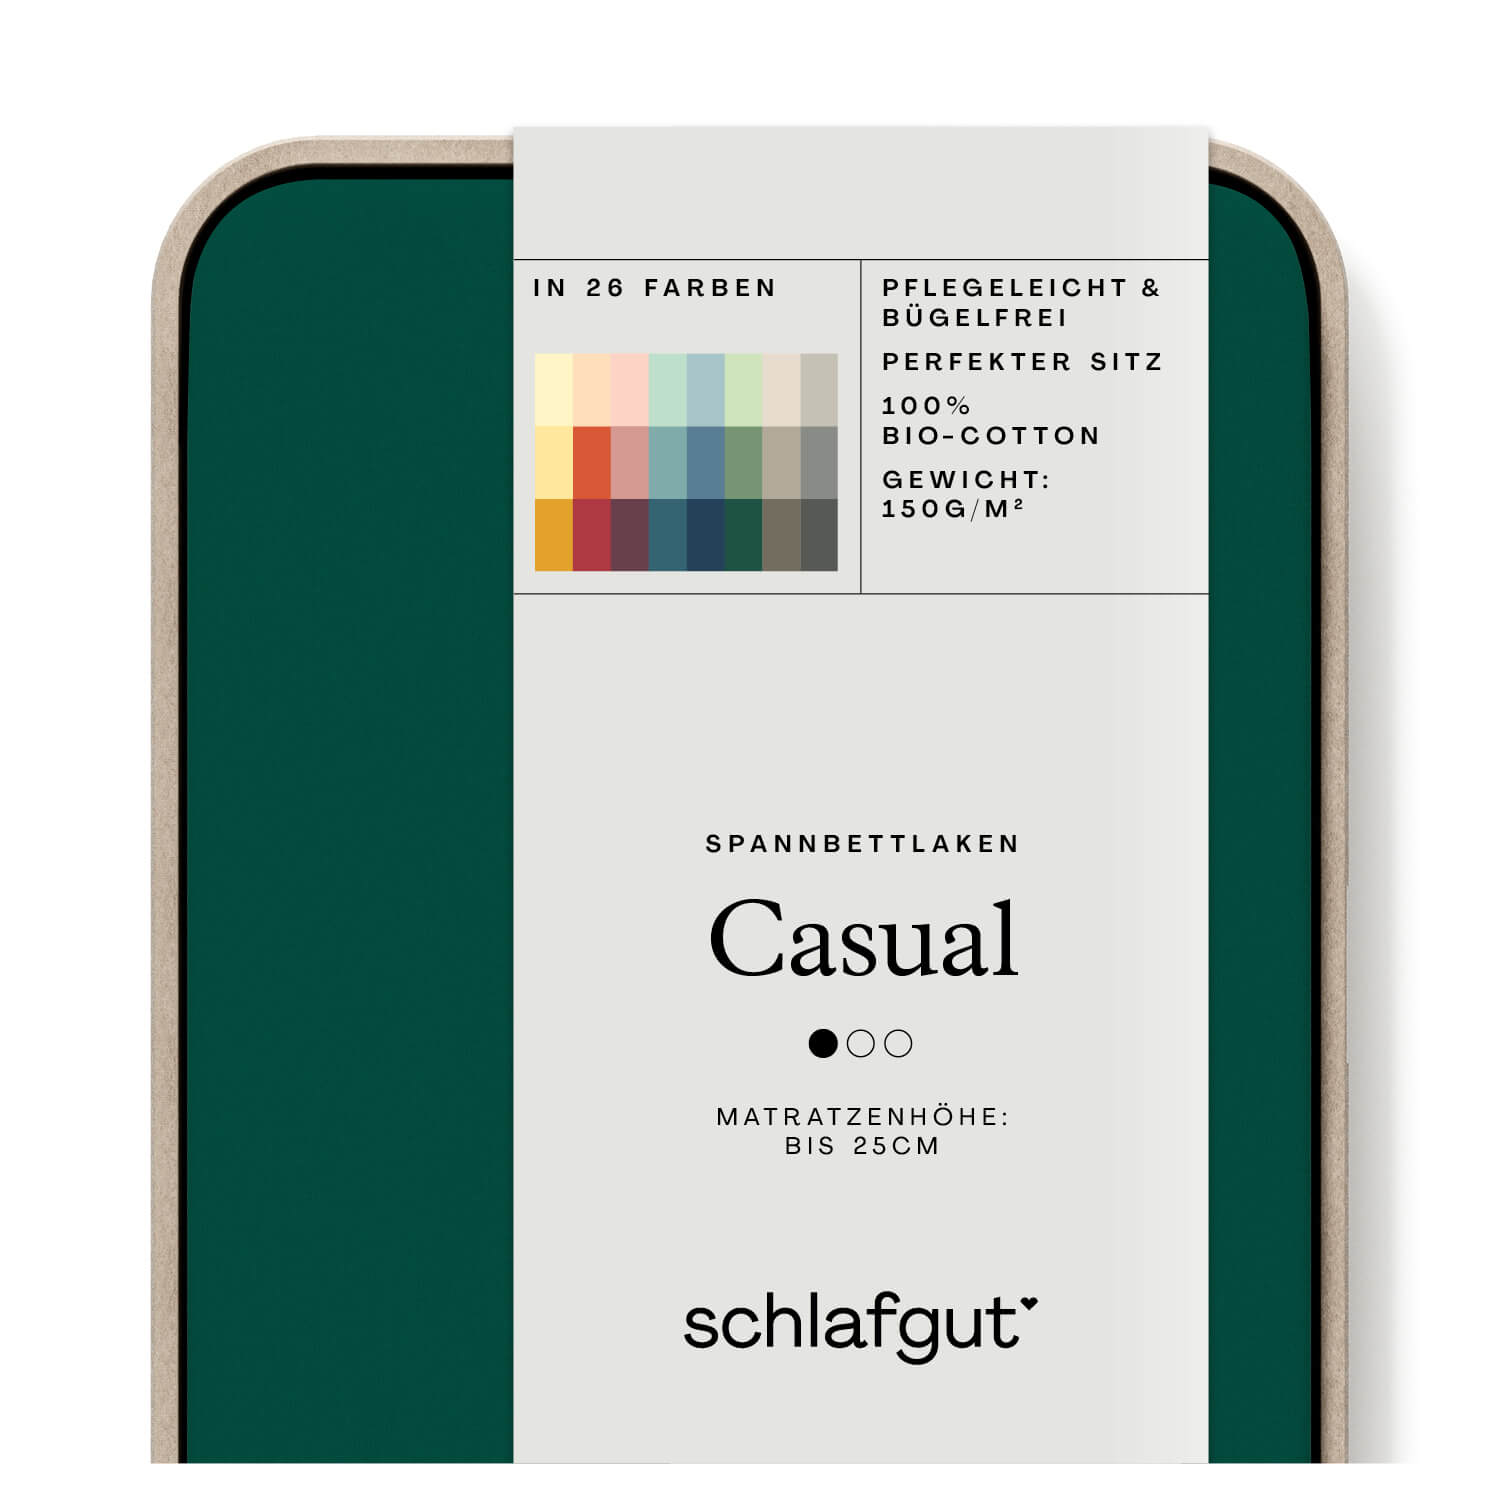 Das Produktbild vom Spannbettlaken der Reihe Casual in Farbe green deep von Schlafgut